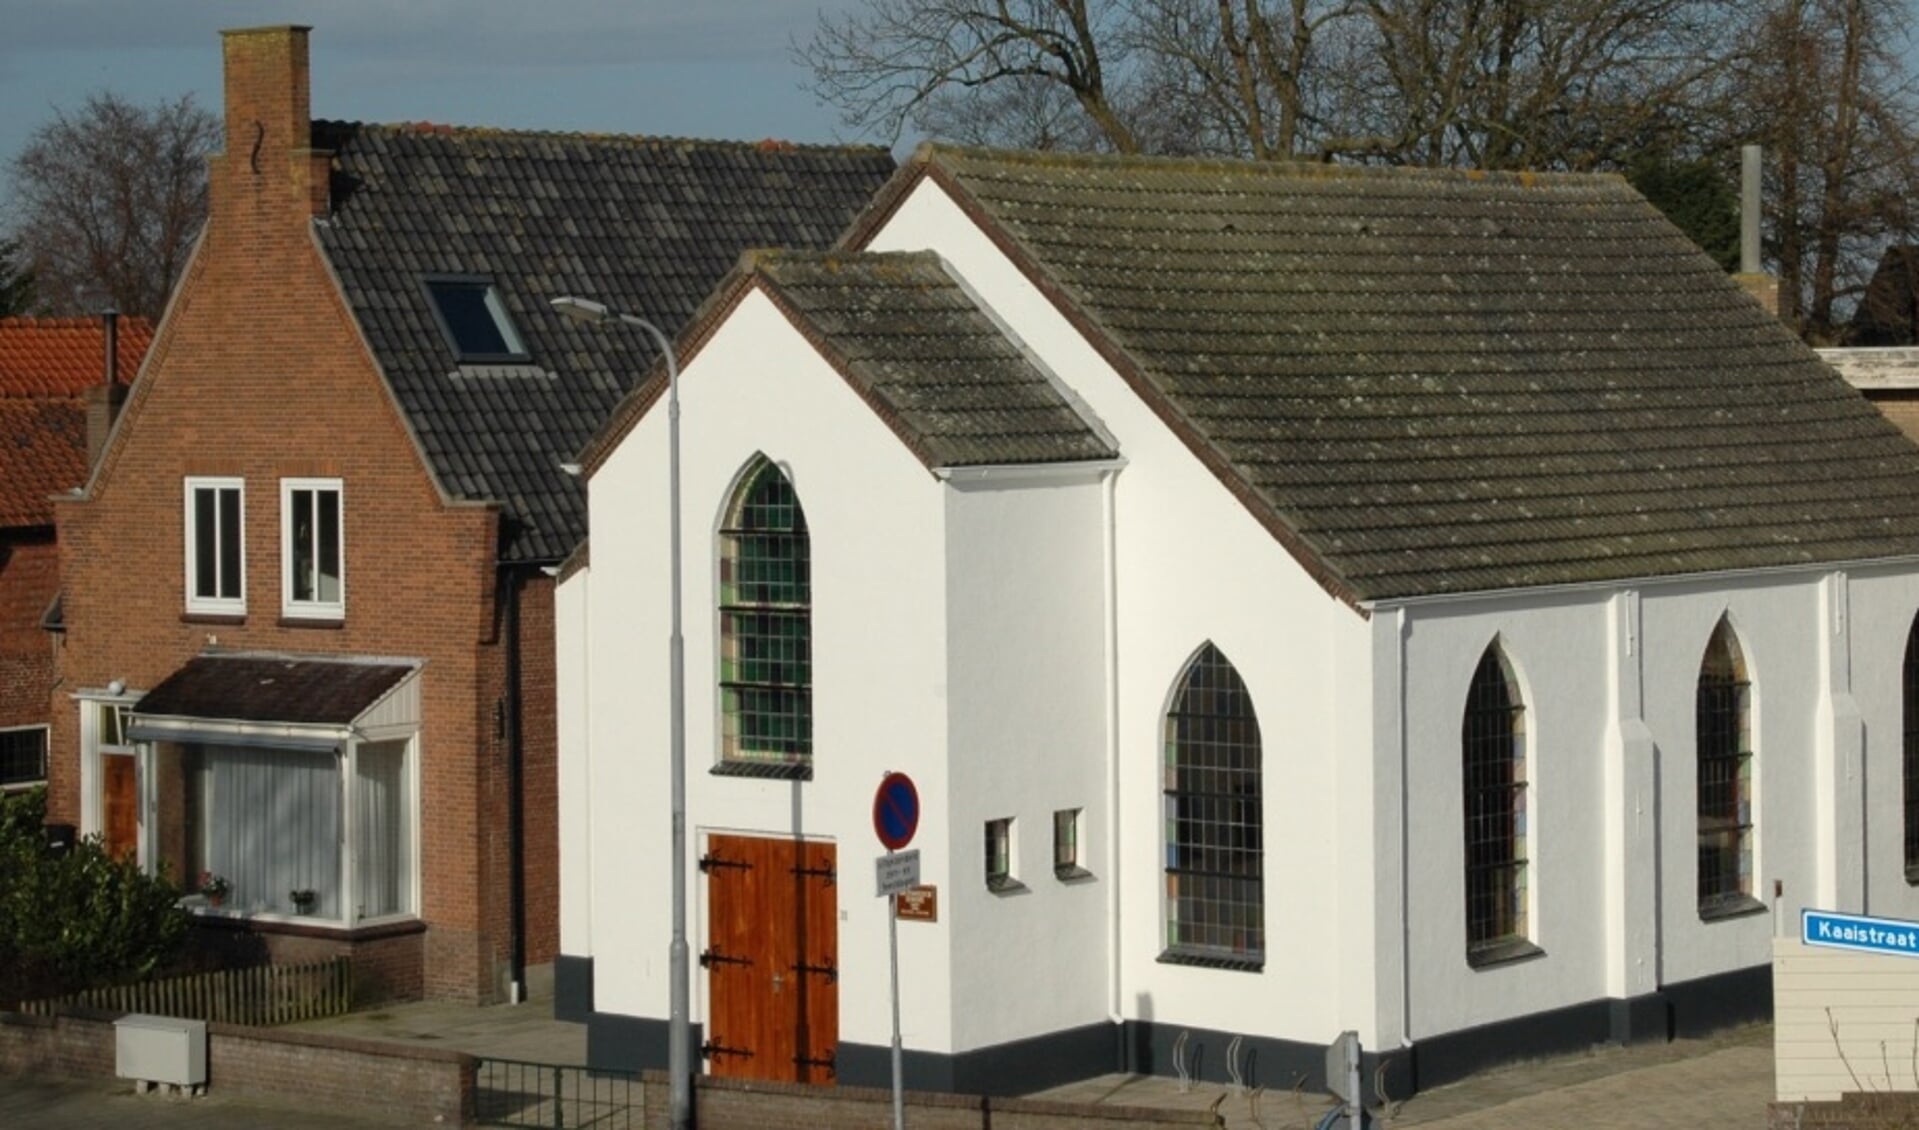 Elke dinsdag van 9.00-12.00 uur is er een vrije inloop in het witte kerkje van de Vrije Evangelische Gemeente Yerseke.